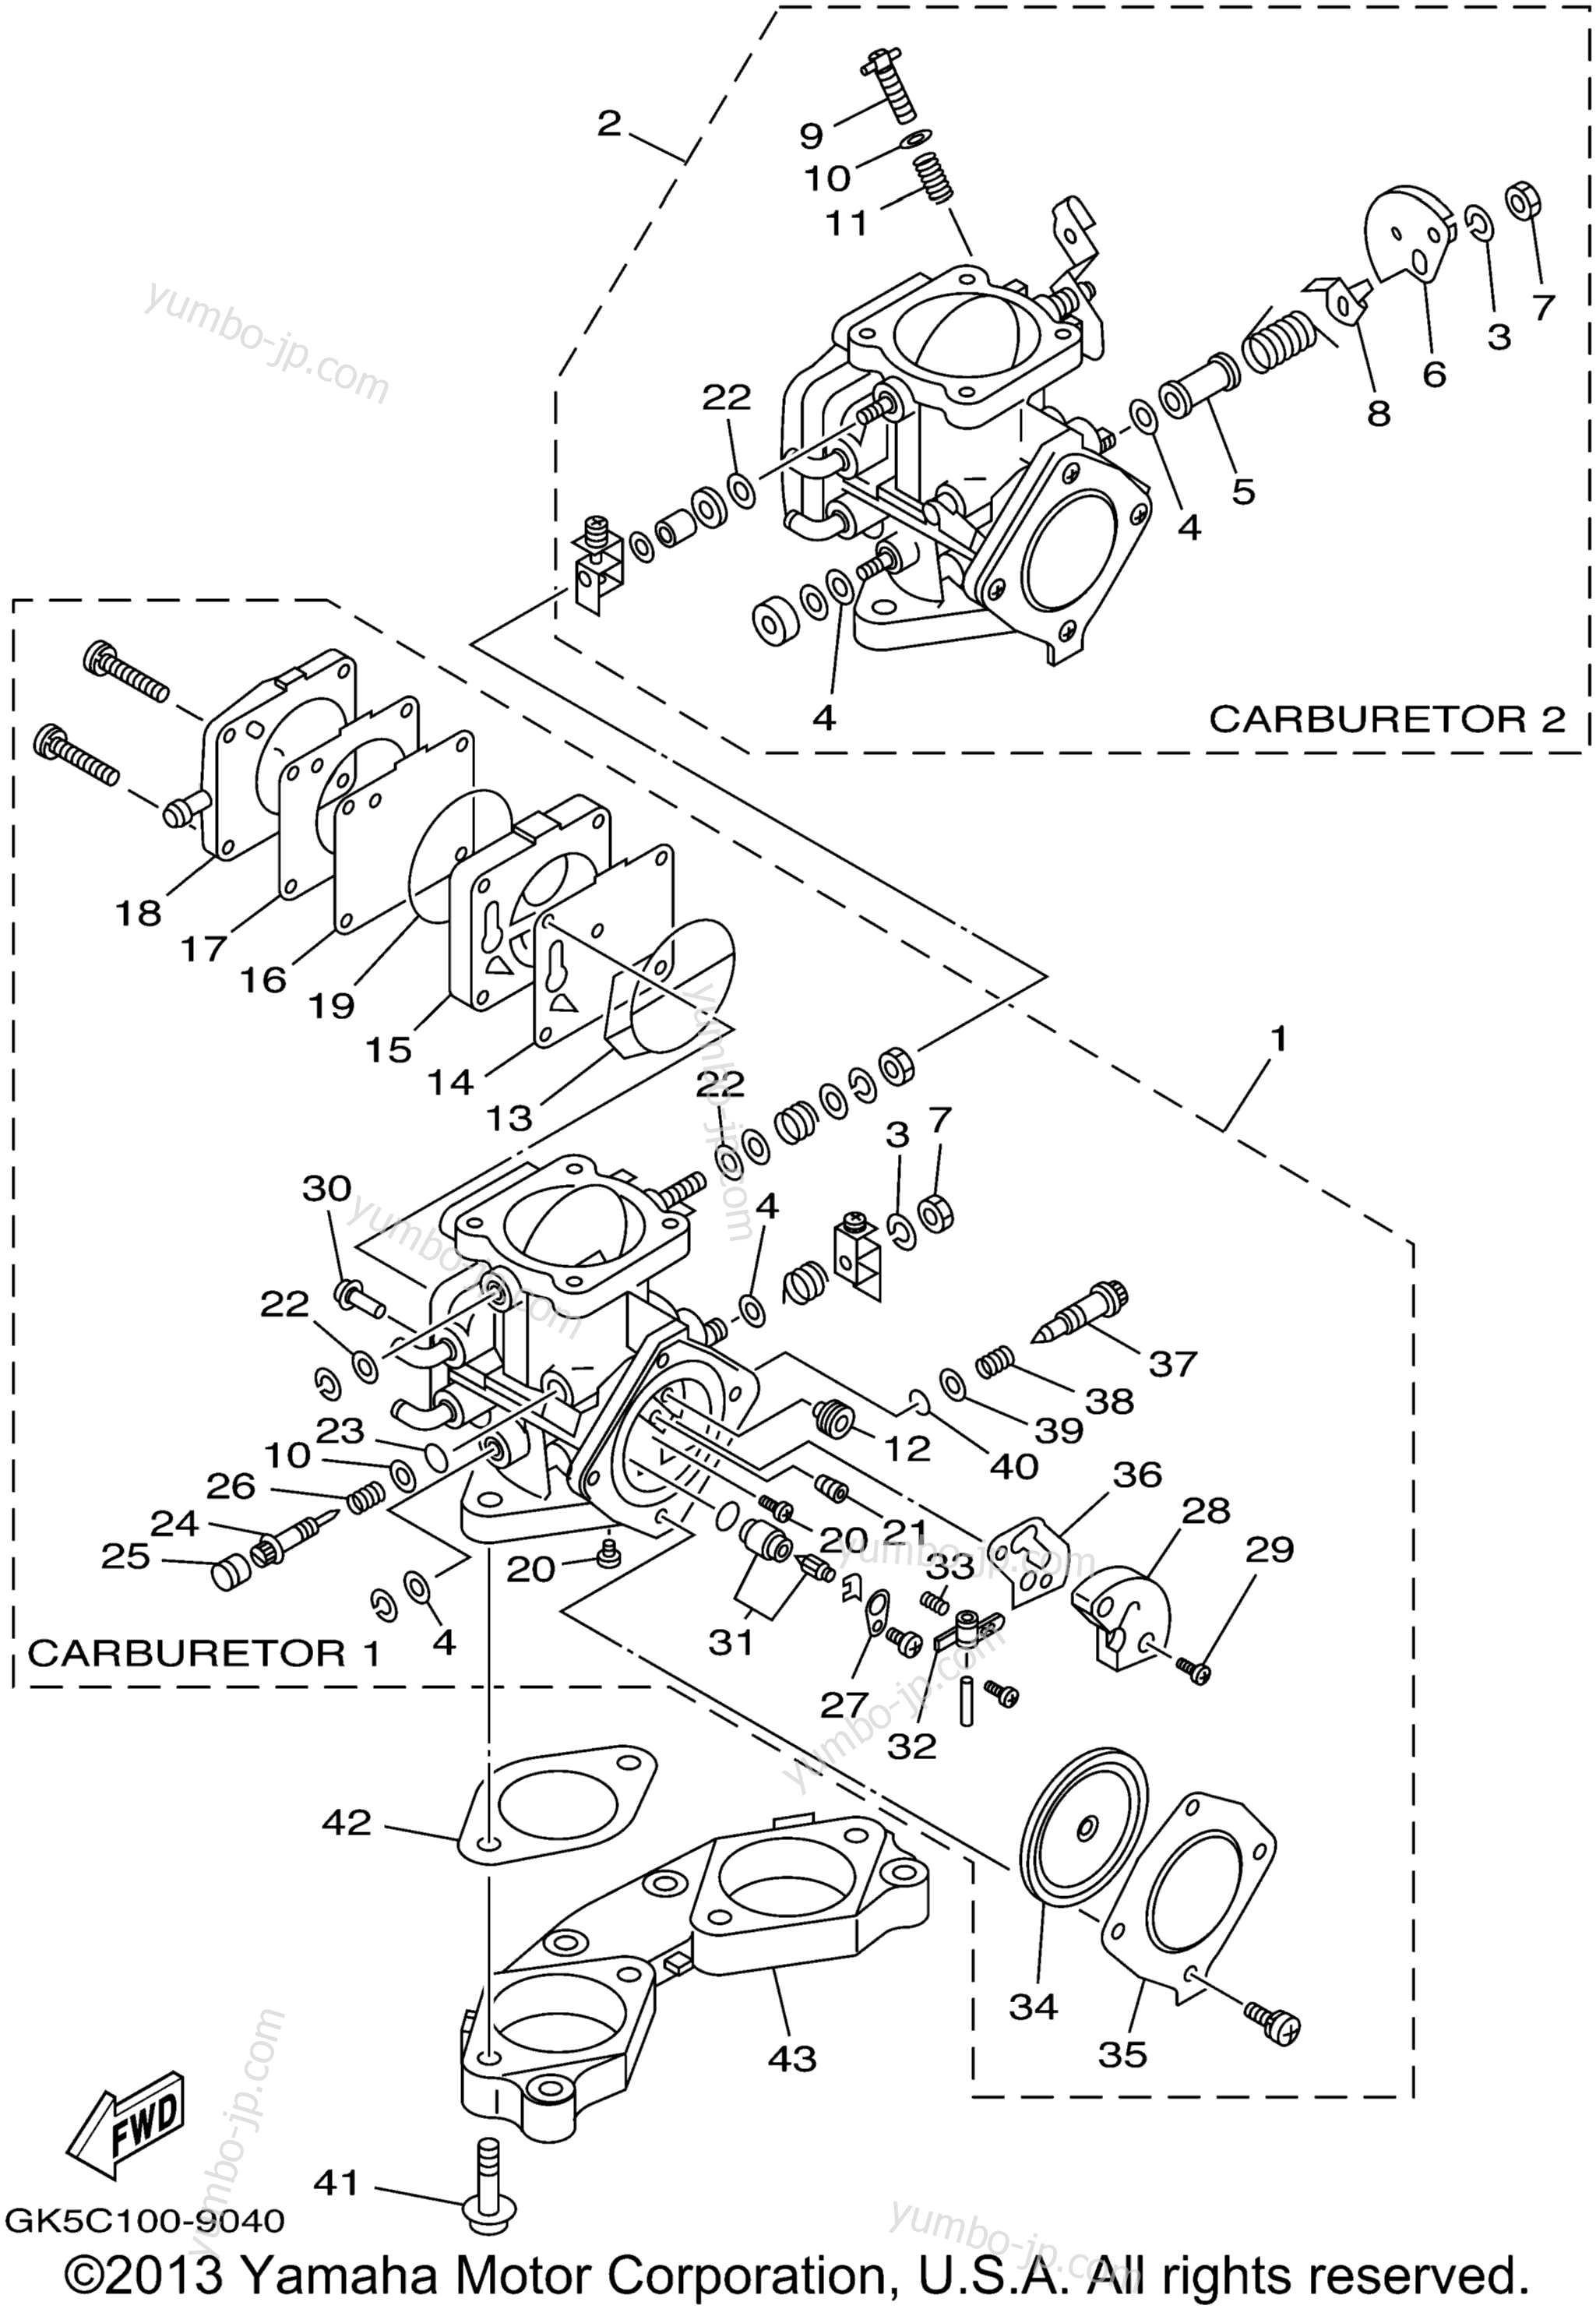 Карбюратор для гидроциклов YAMAHA WAVE RUNNER GP760 (GP760X) 1999 г.